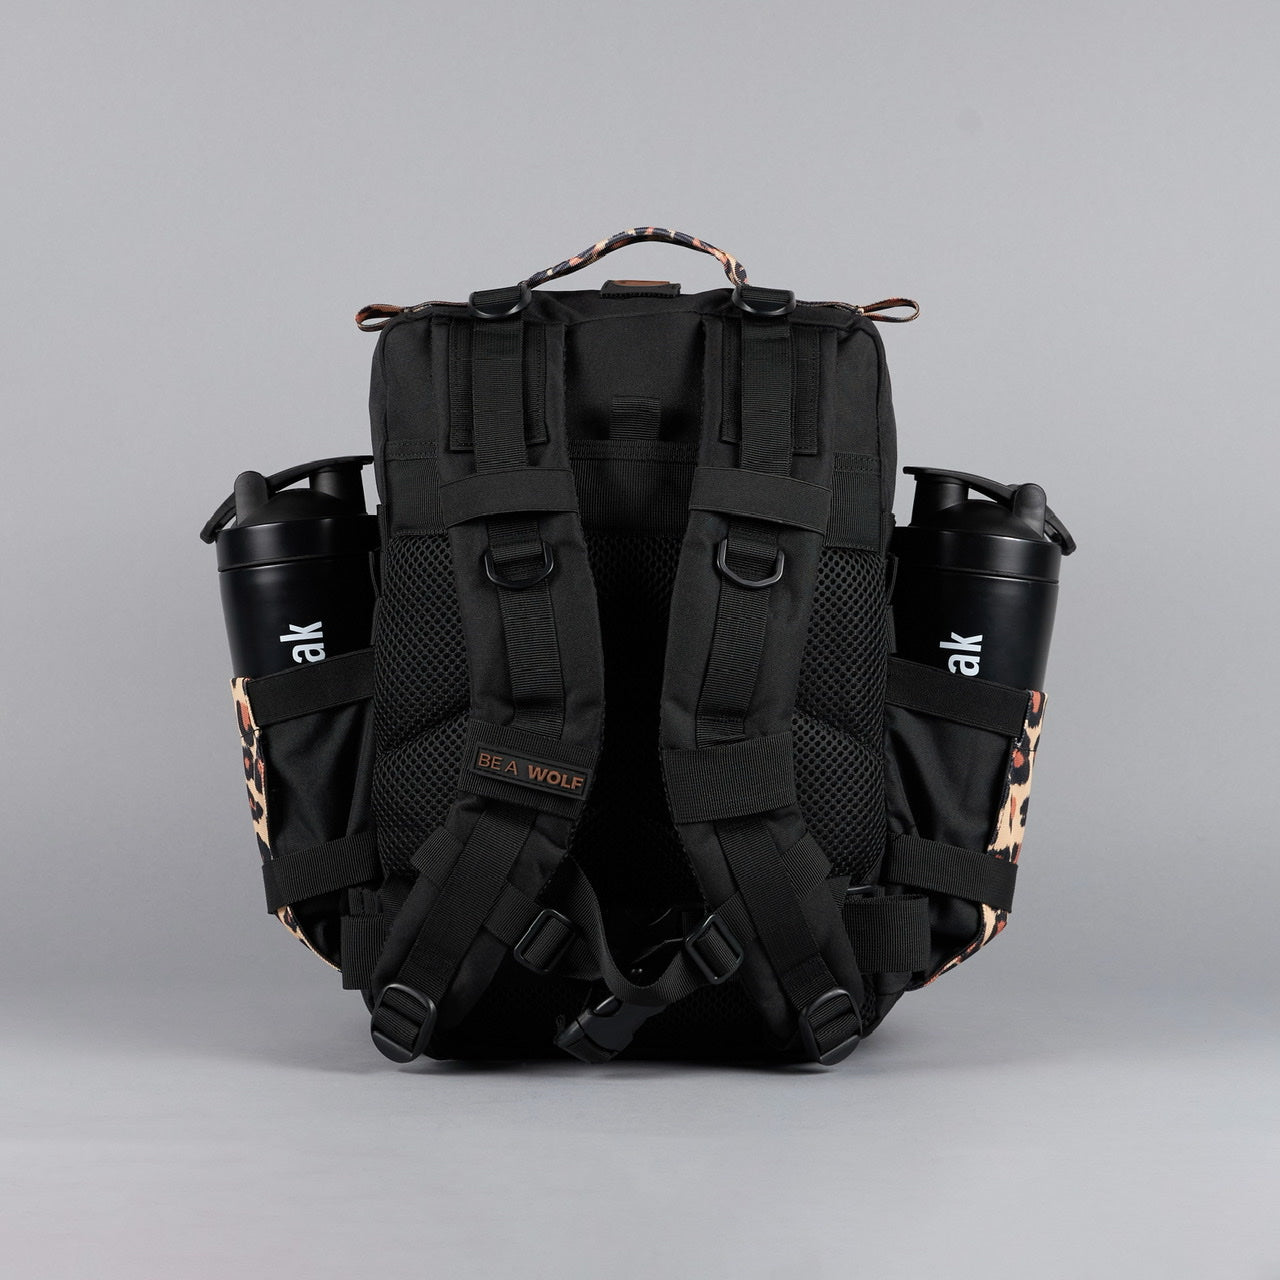 25L Backpack Alpha Black Leopard Limited Edition